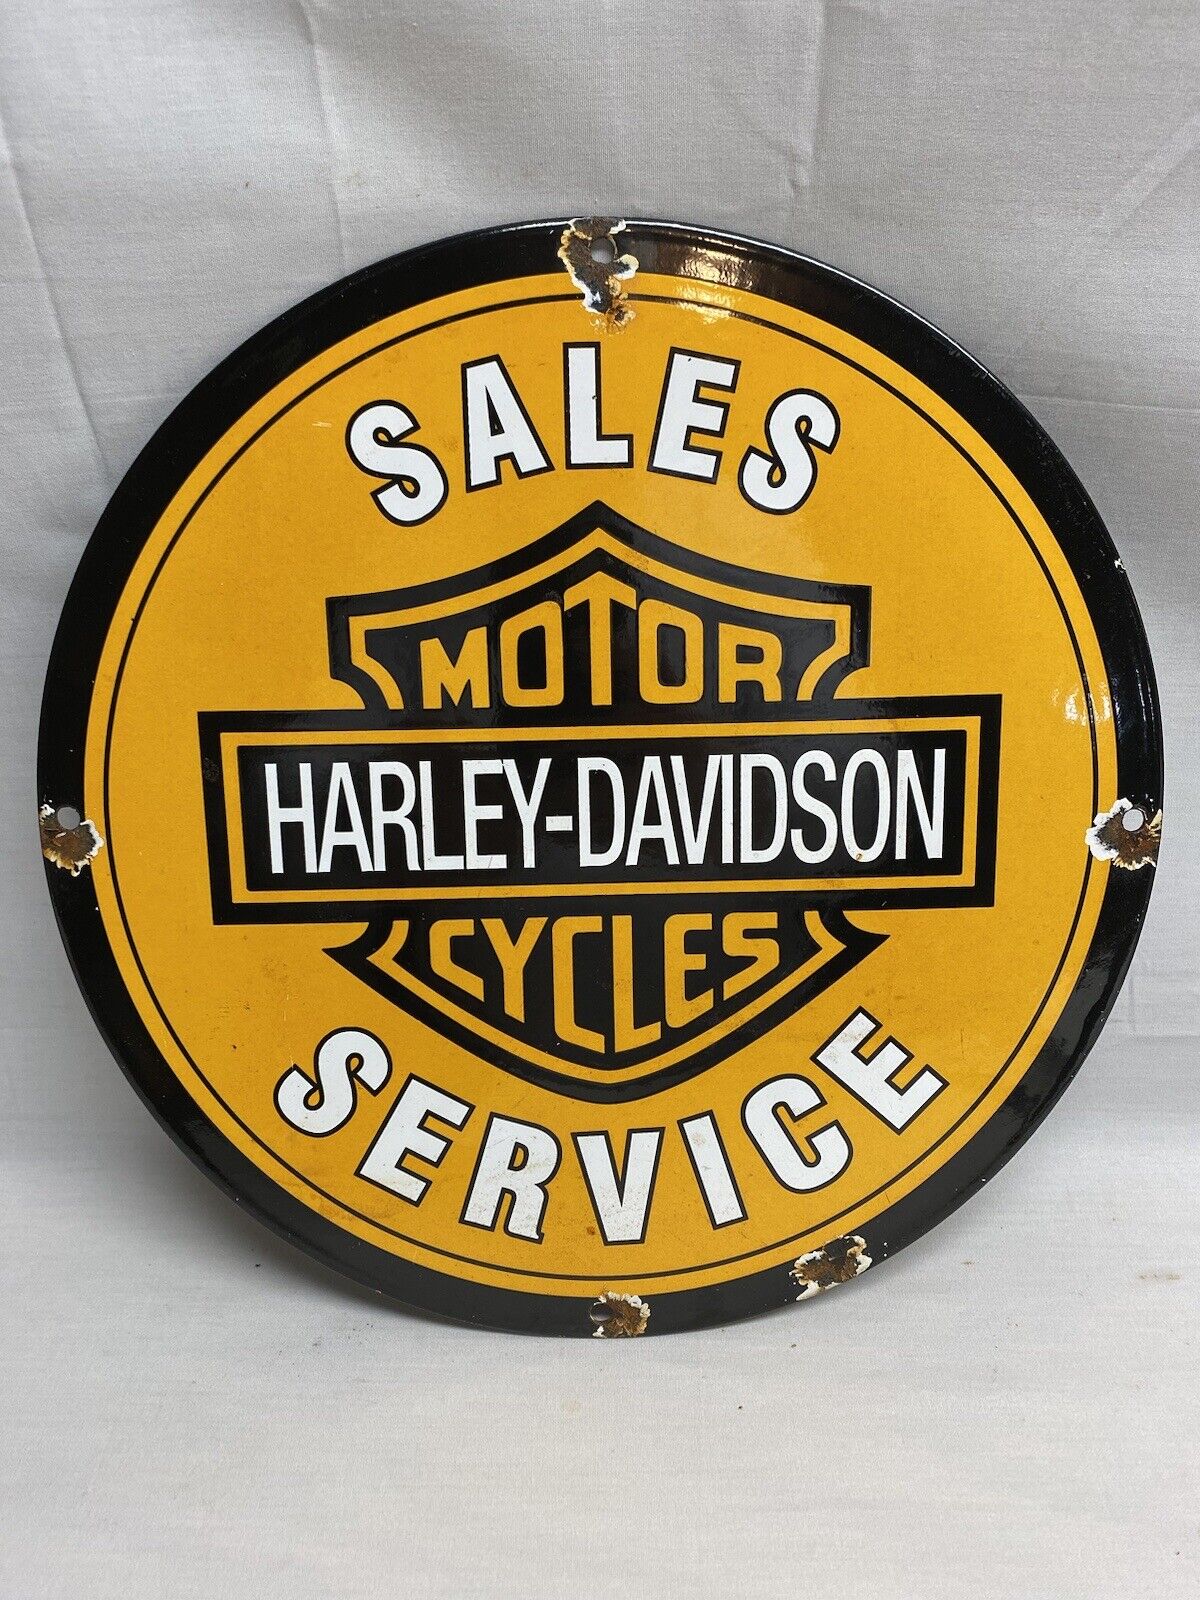 HARLEY DAVIDSON MOTORCYCLES PORCELAIN VINTAGE STYLE SALES SERVICE SIGN